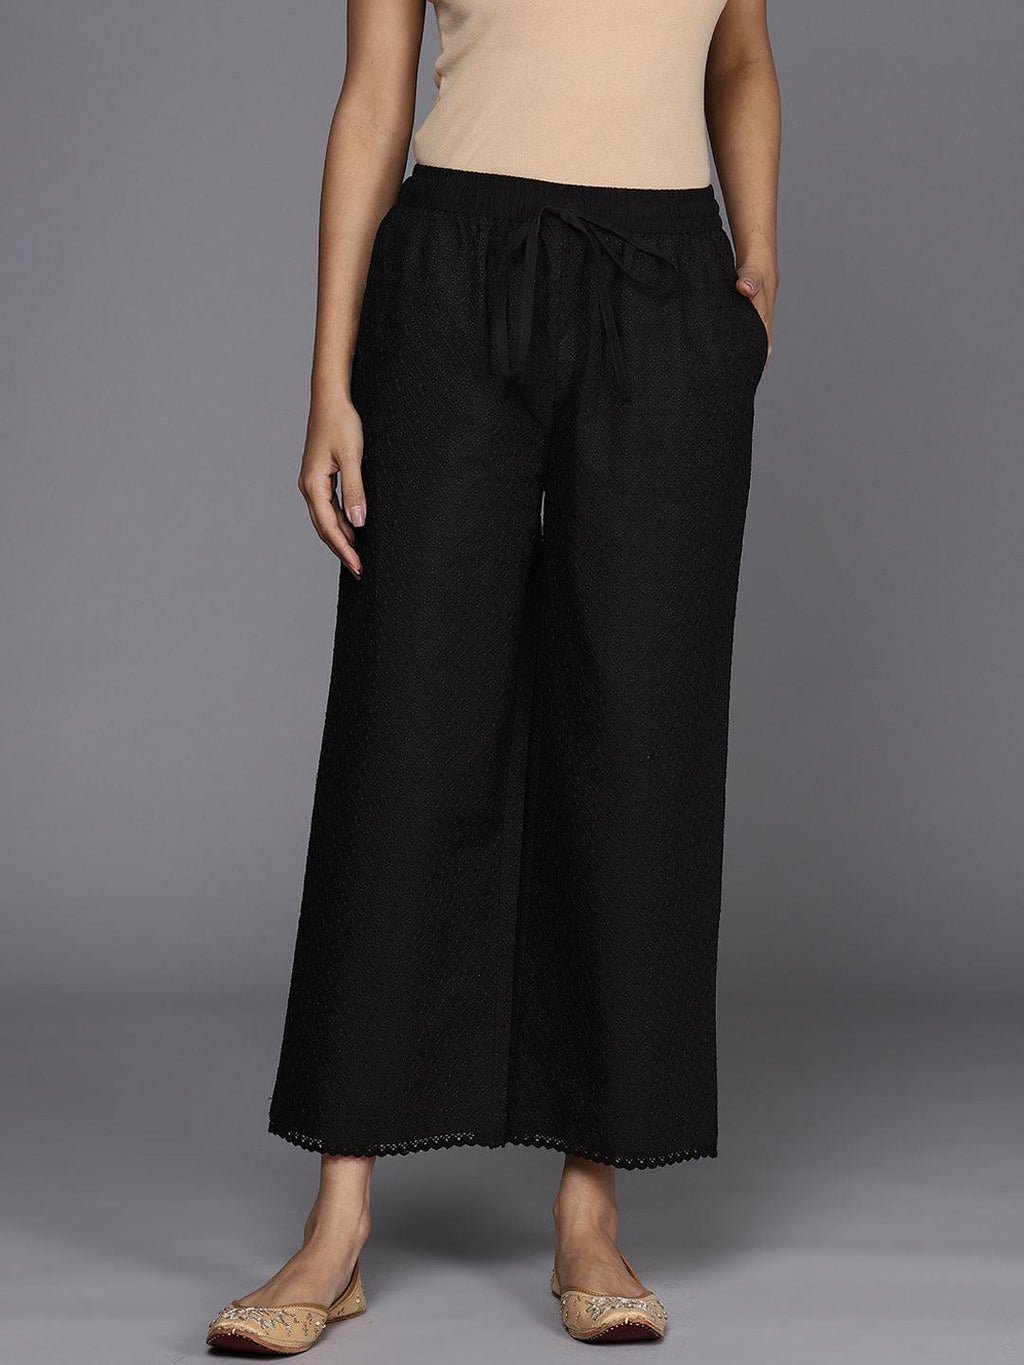 Buy Black Trousers & Pants for Women by UNIQUECHOICE Online | Ajio.com